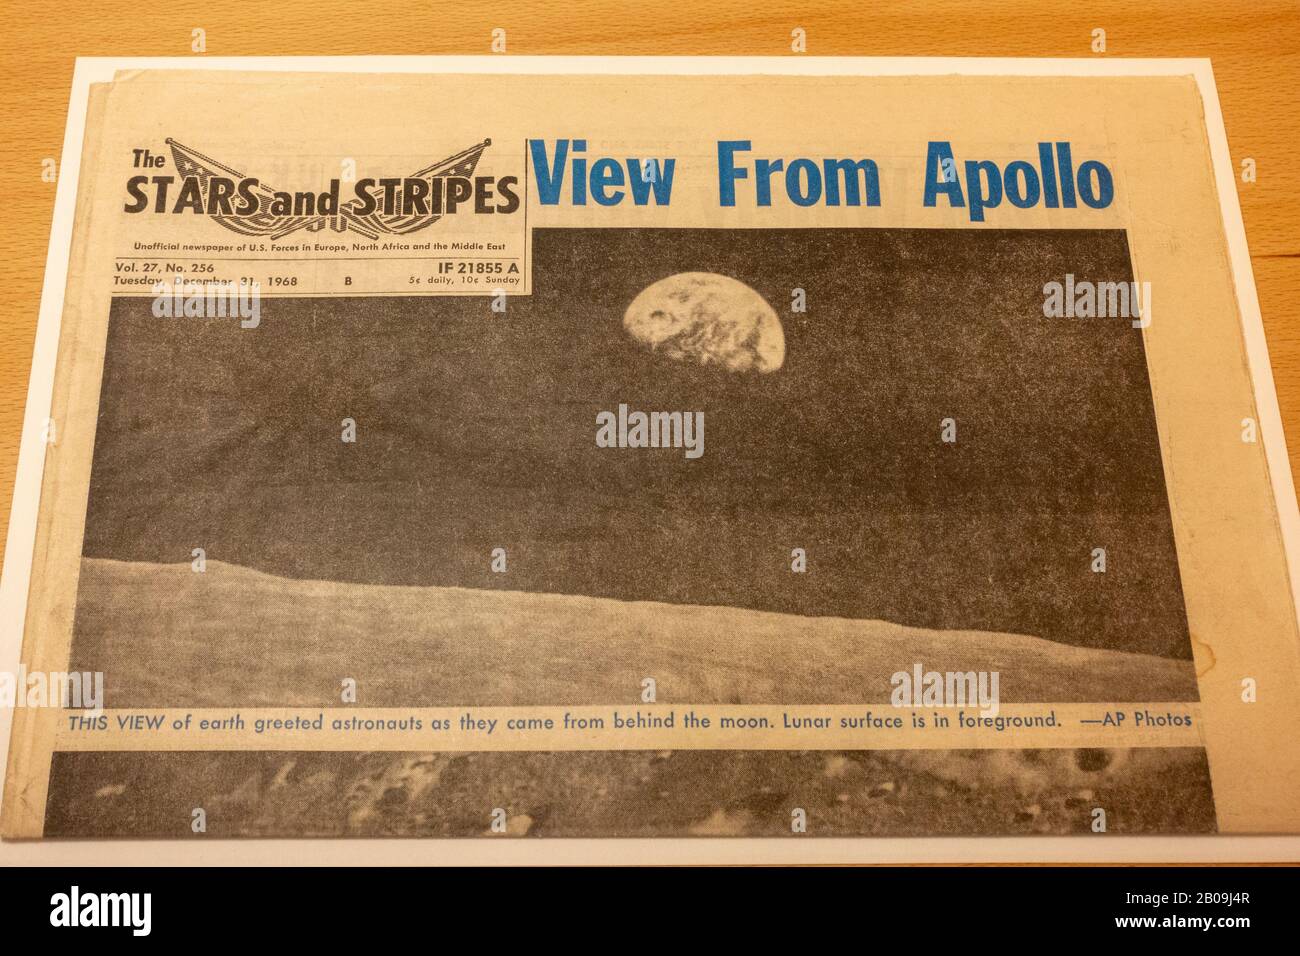 Apollo 8, giornale 'Stars and Stripes' con 'View from Apollo', (31 dicembre 1968) Museo delle Comunicazioni (Norimberga Transport Museum), Germania. Foto Stock